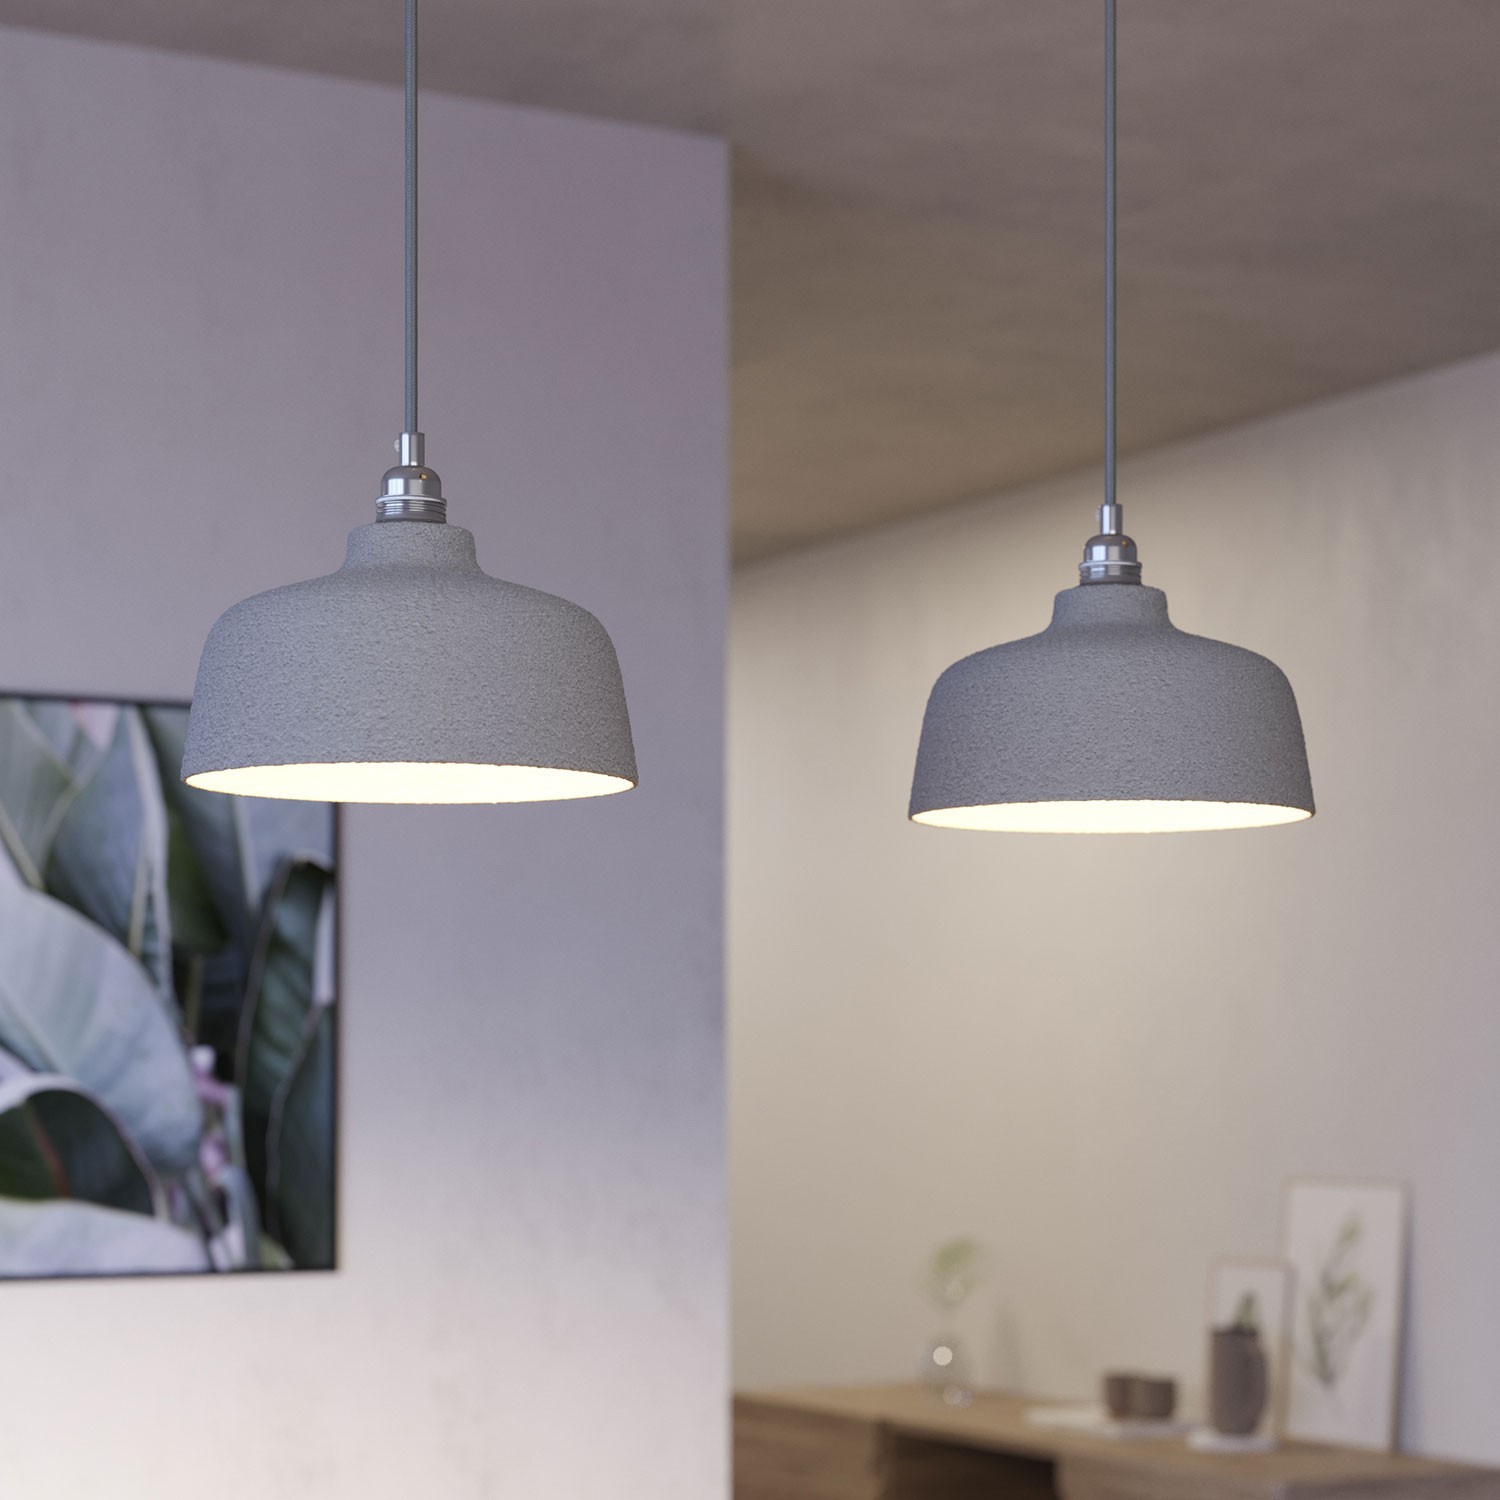 2 lichts-hanglamp voorzien van XXL rechthoekige Rose-One 675 mm compleet met strijkijzersnoer en Coppa lampenkap